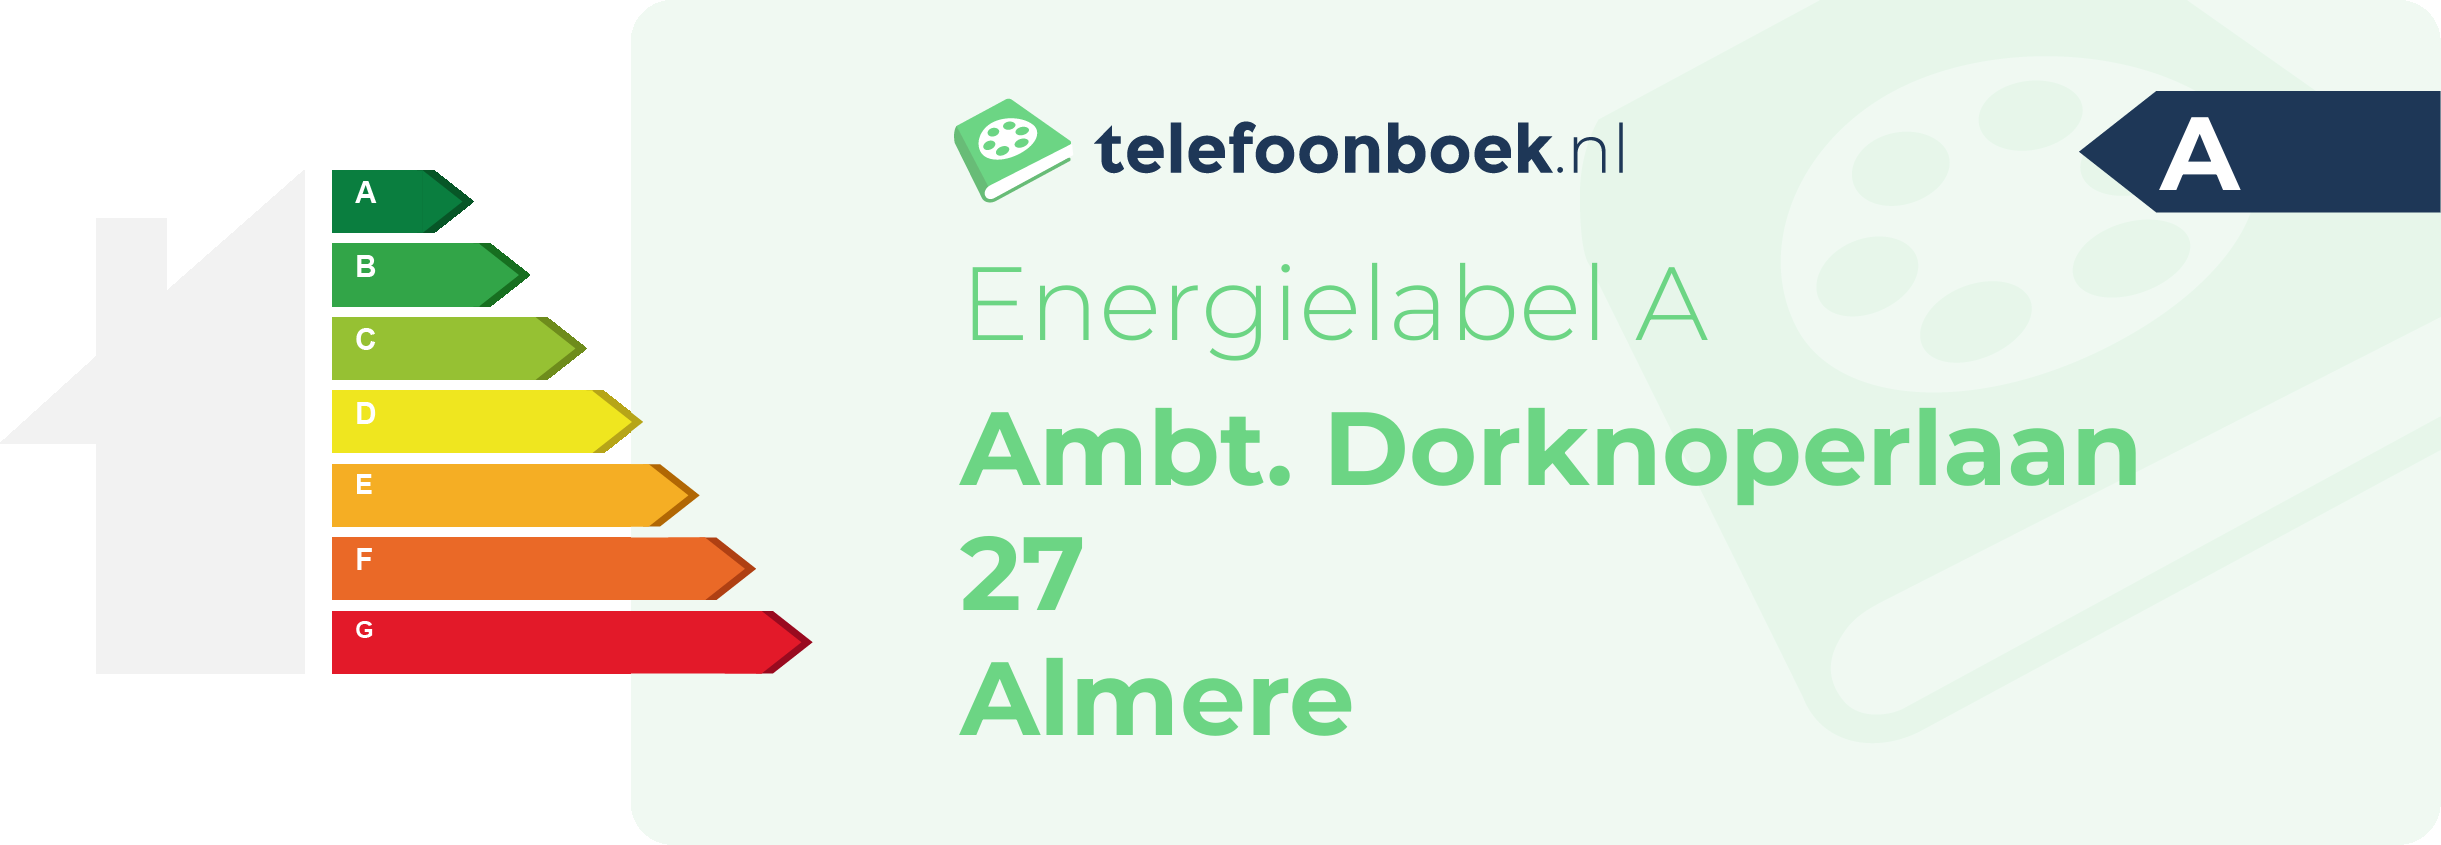 Energielabel Ambt. Dorknoperlaan 27 Almere